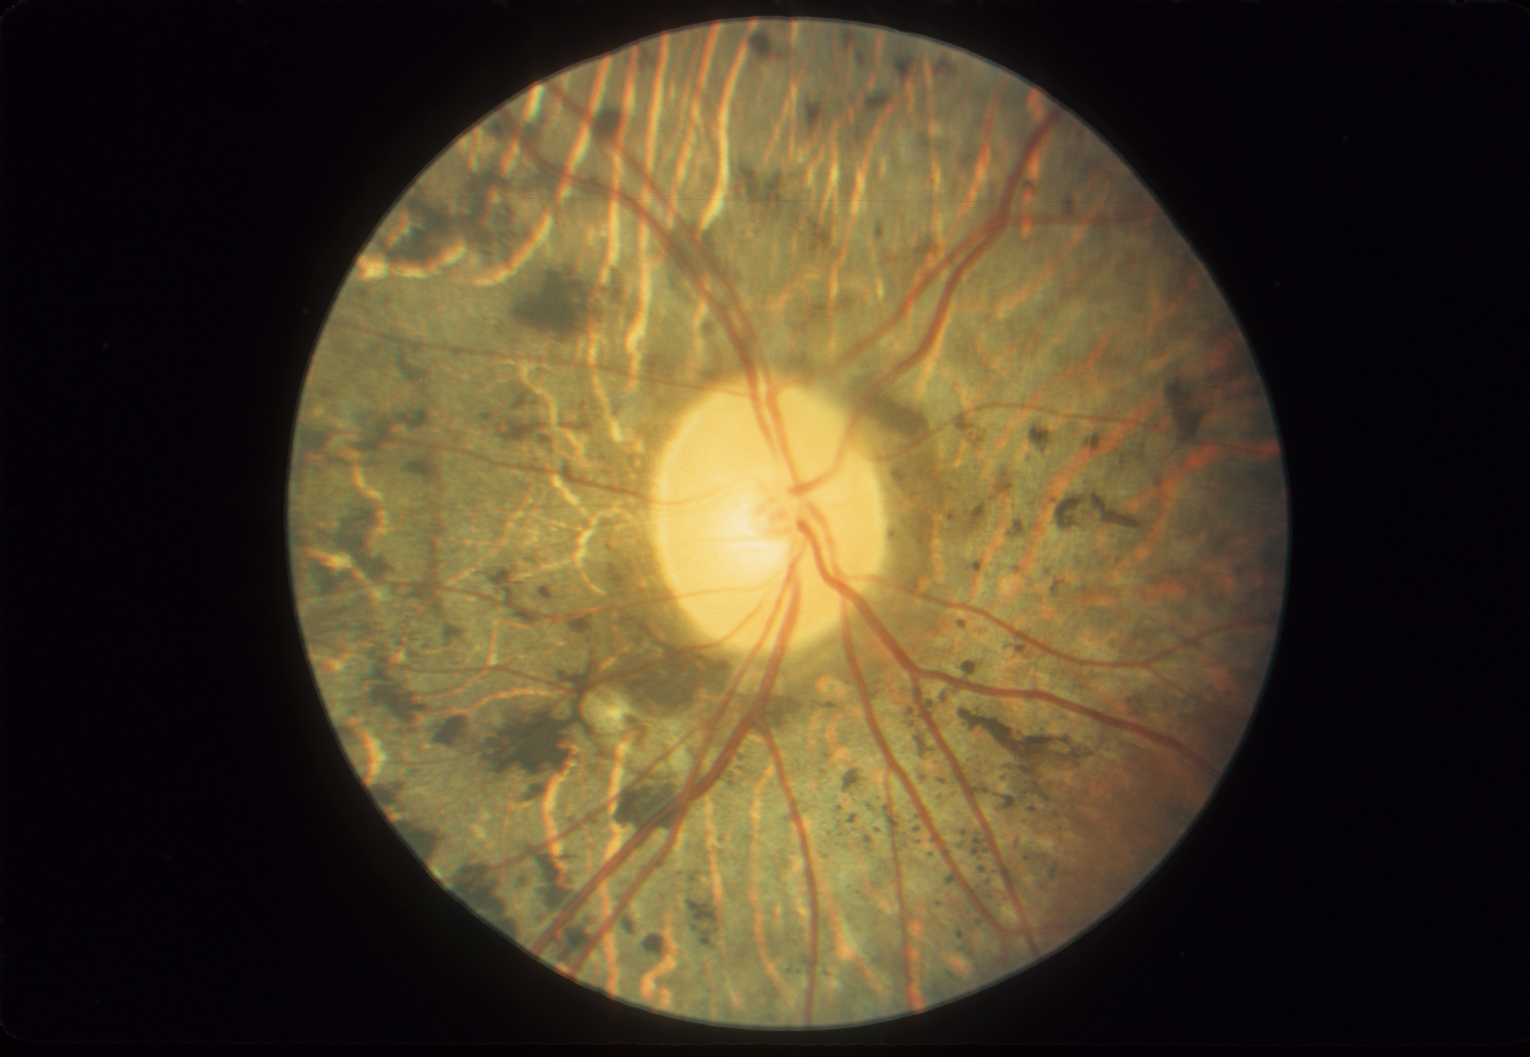 Fundus in autosomal recessive retinitis pigmentosa